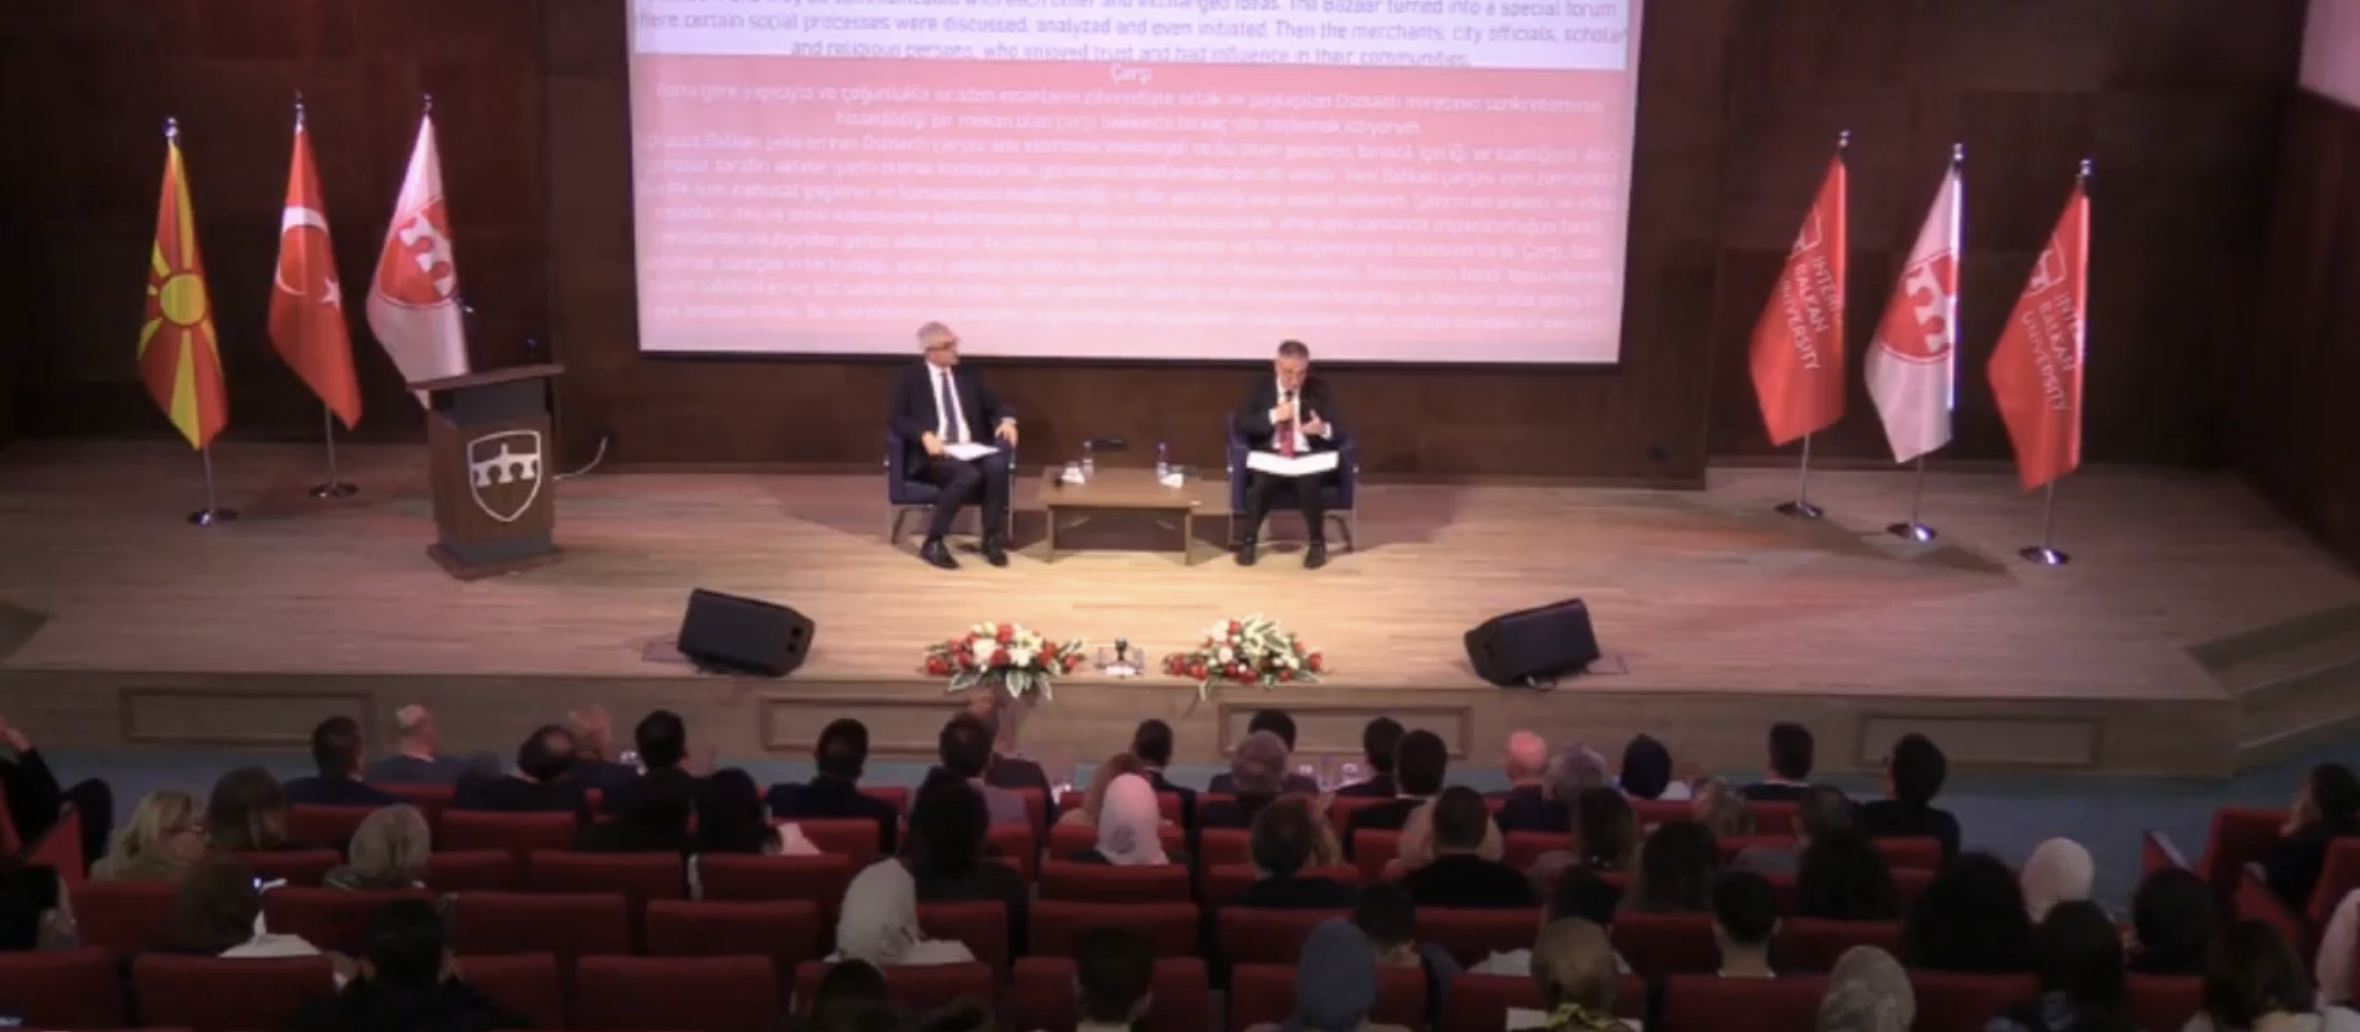 Üsküp’te “Cumhuriyetin 100. Yılında Türkiye ve Balkanlar: Ortak miras, kültür ve gelecek” konferansı düzenlendi